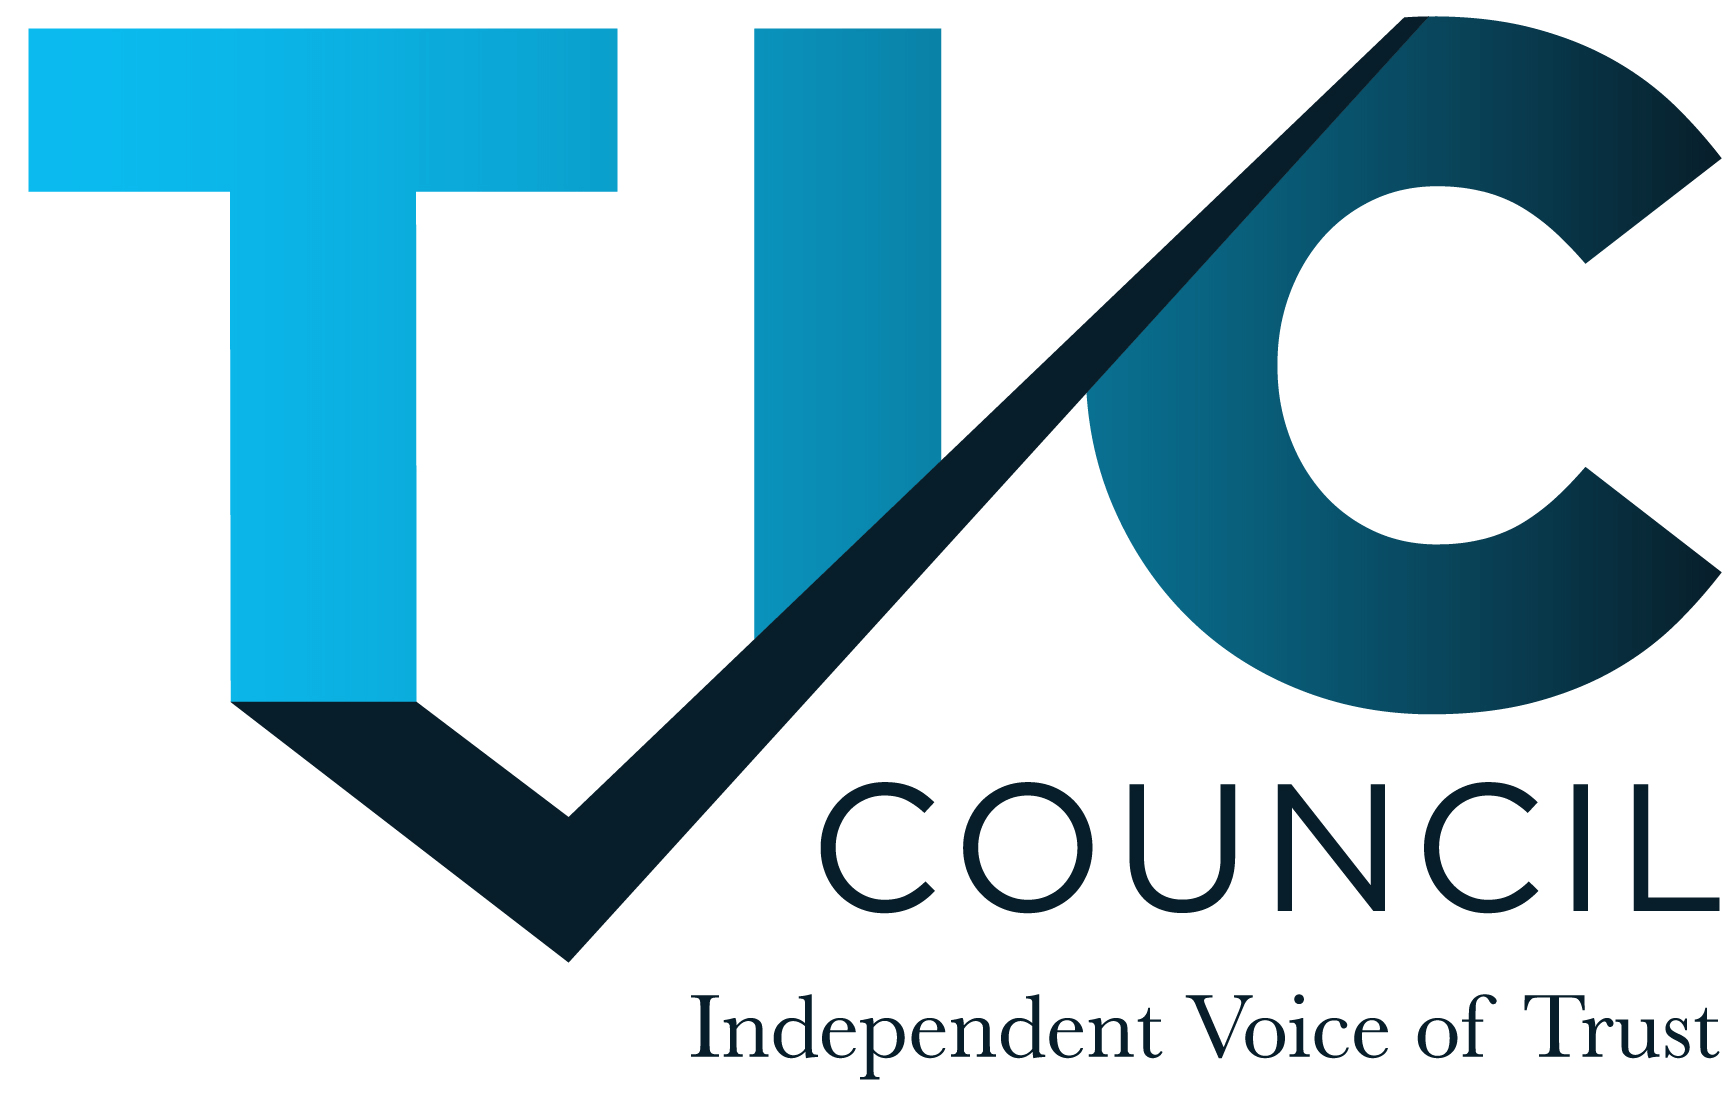 TIC Council